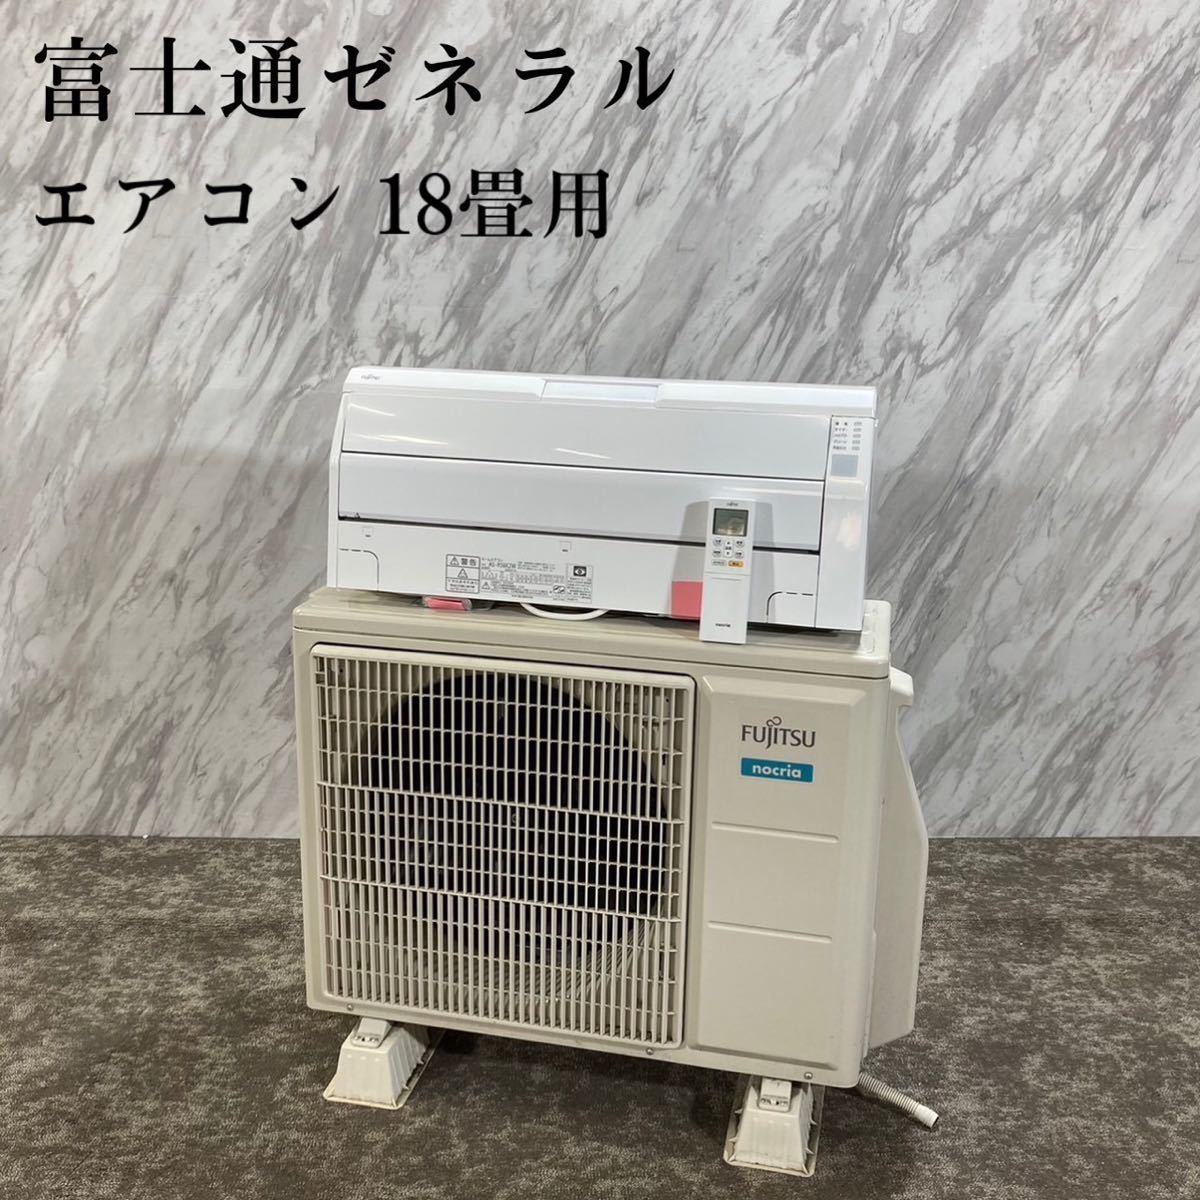 富士通ゼネラル エアコン AS-R56K2W 18畳用 2020年製 G177